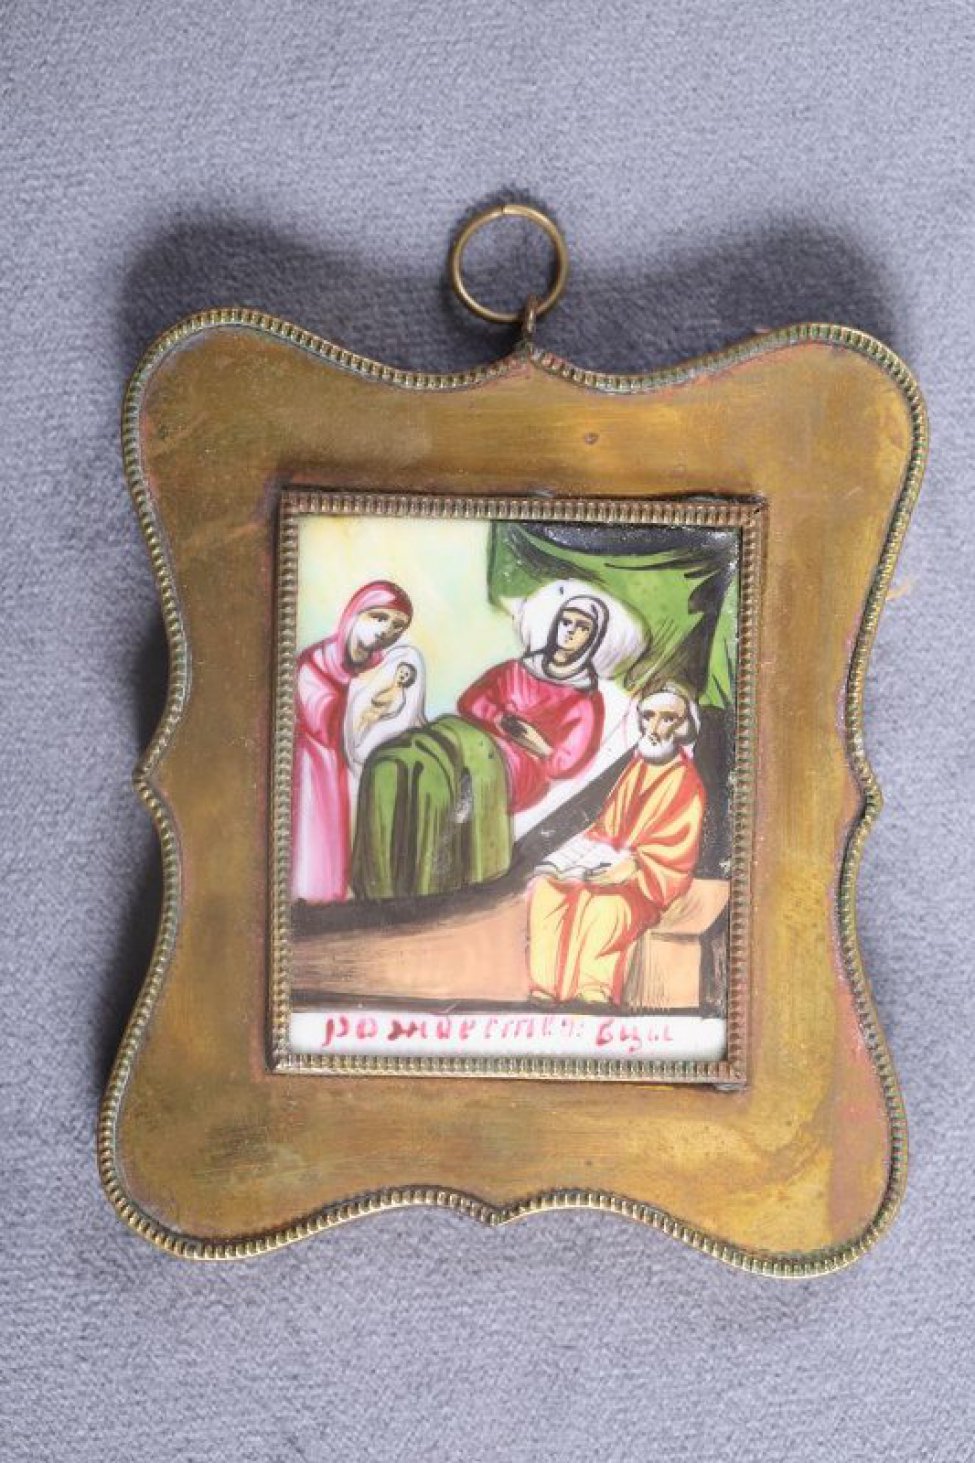 Представлена прав. Анна на одре; справа - сидящий прав. Иоаким с книгой на коленях; слева - служанка, которая держит младенцу Марию.